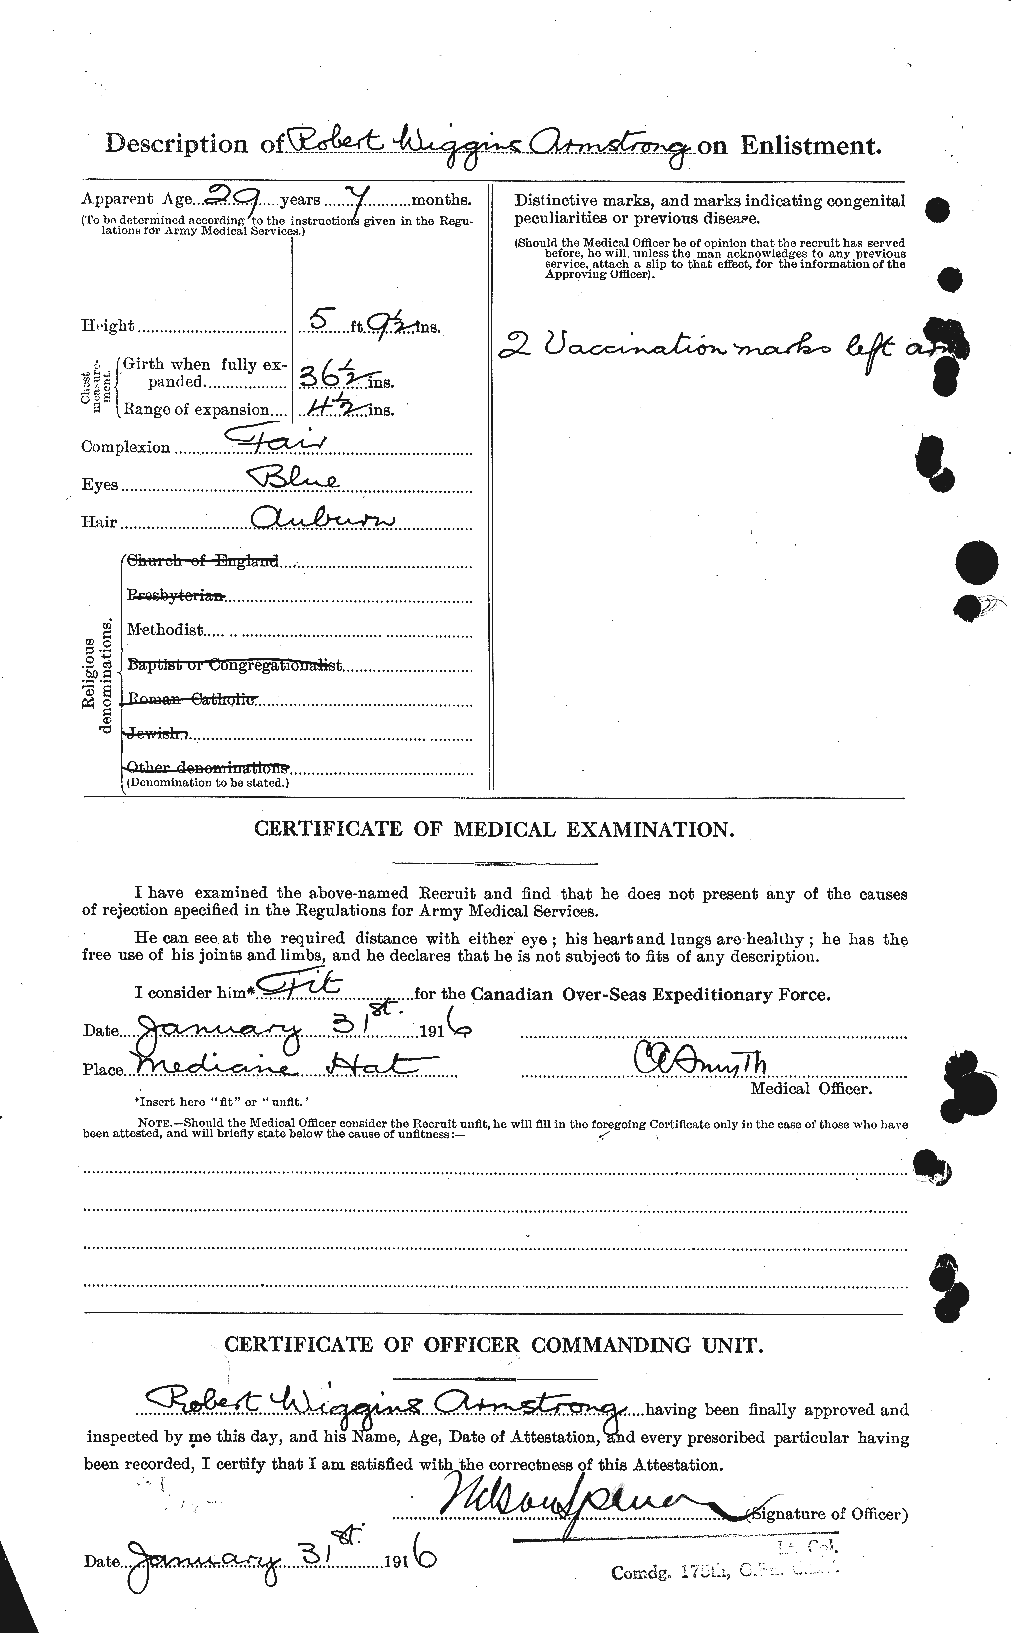 Dossiers du Personnel de la Première Guerre mondiale - CEC 212647b